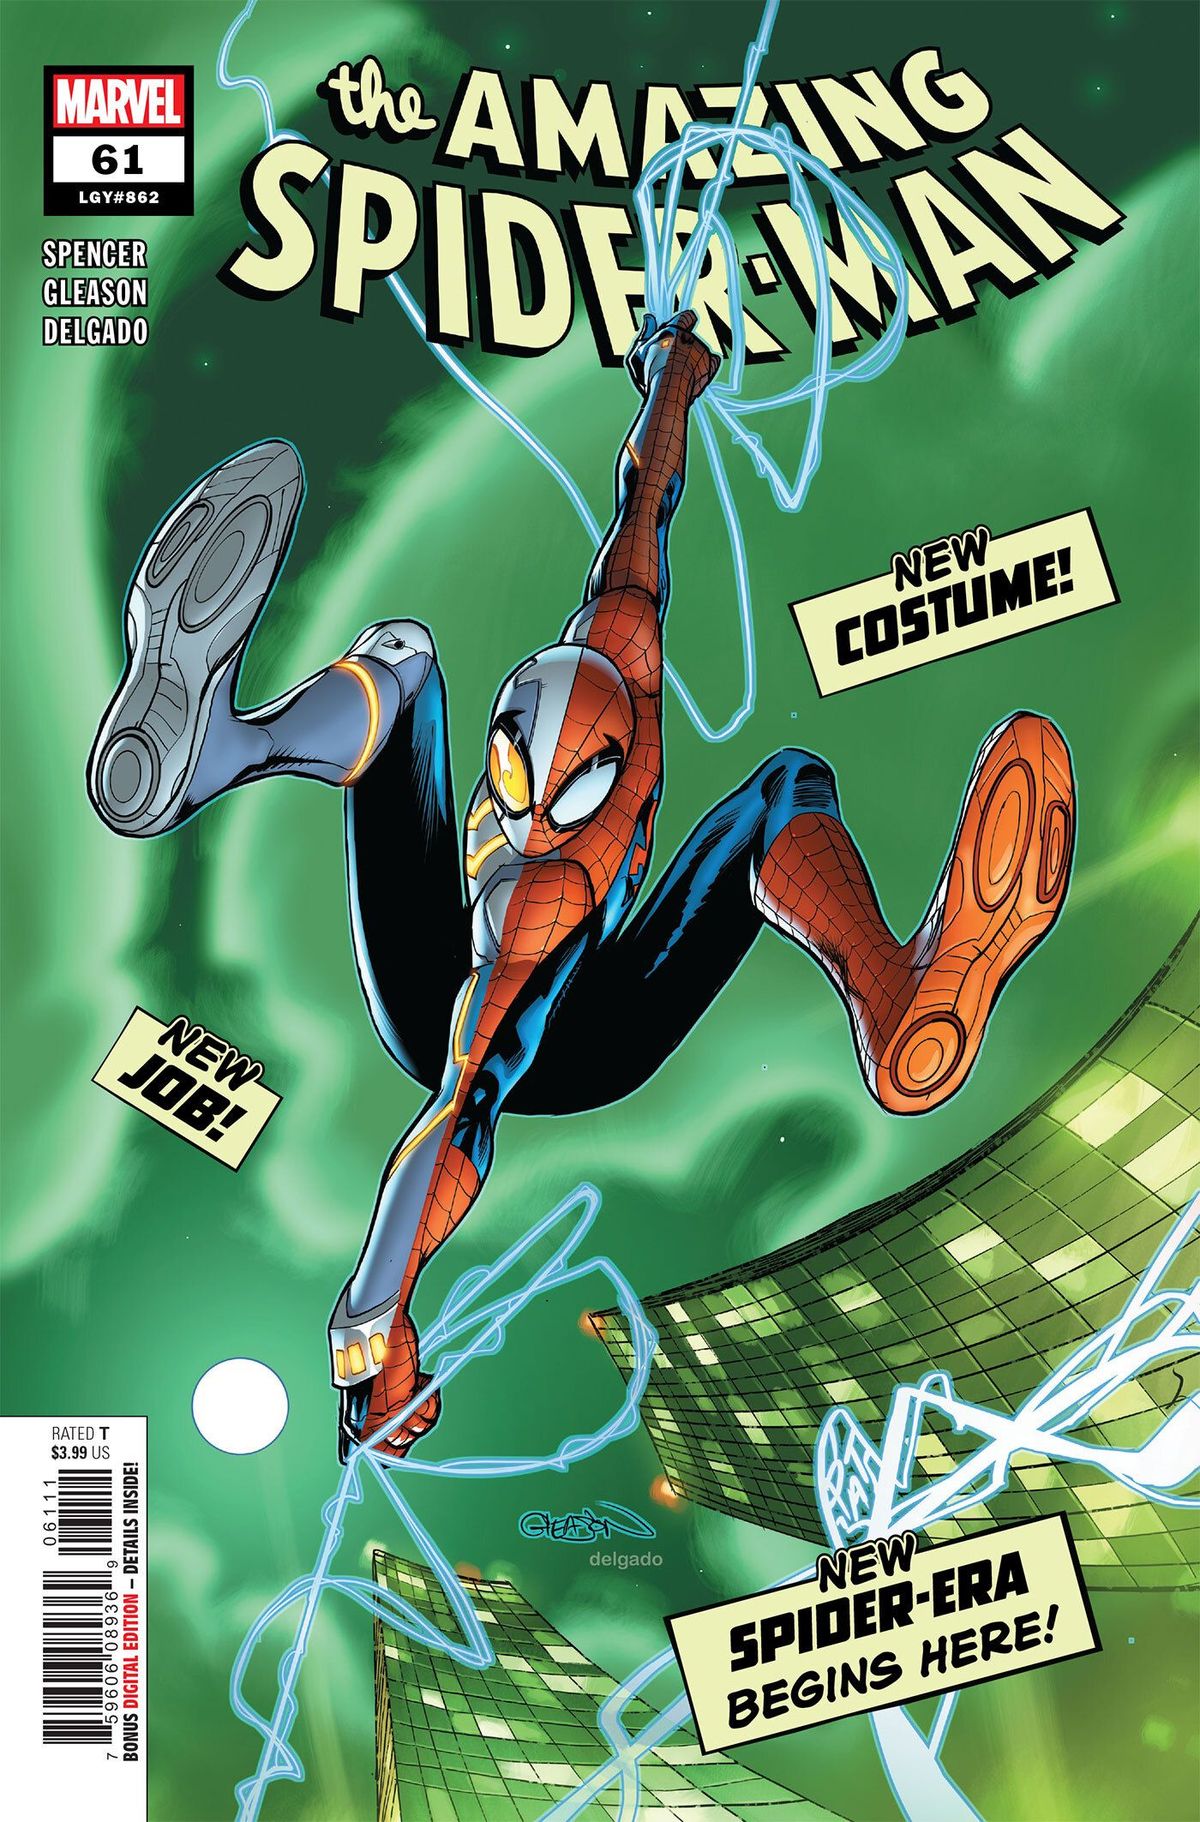 ESCLUSIVO: Amazing Spider-Man Preview mostra il nuovissimo costume di Spidey in azione